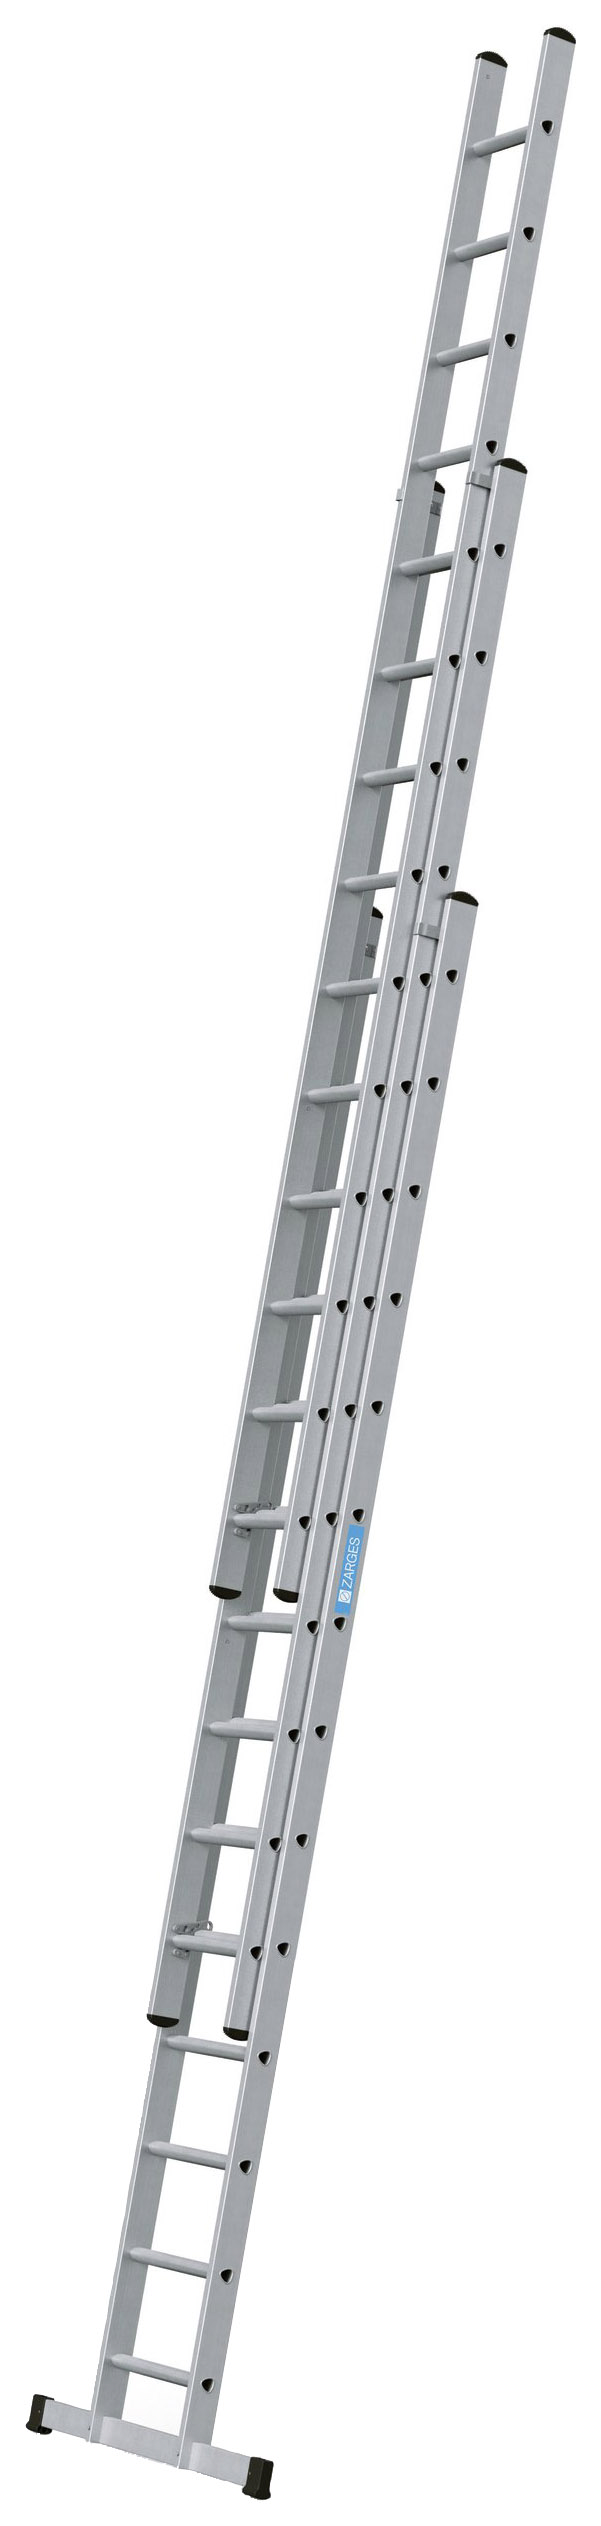 Zarges Everest 3 x 14 D-Rung Aluminium Treble Extension Ladder - Max Height 9.45m